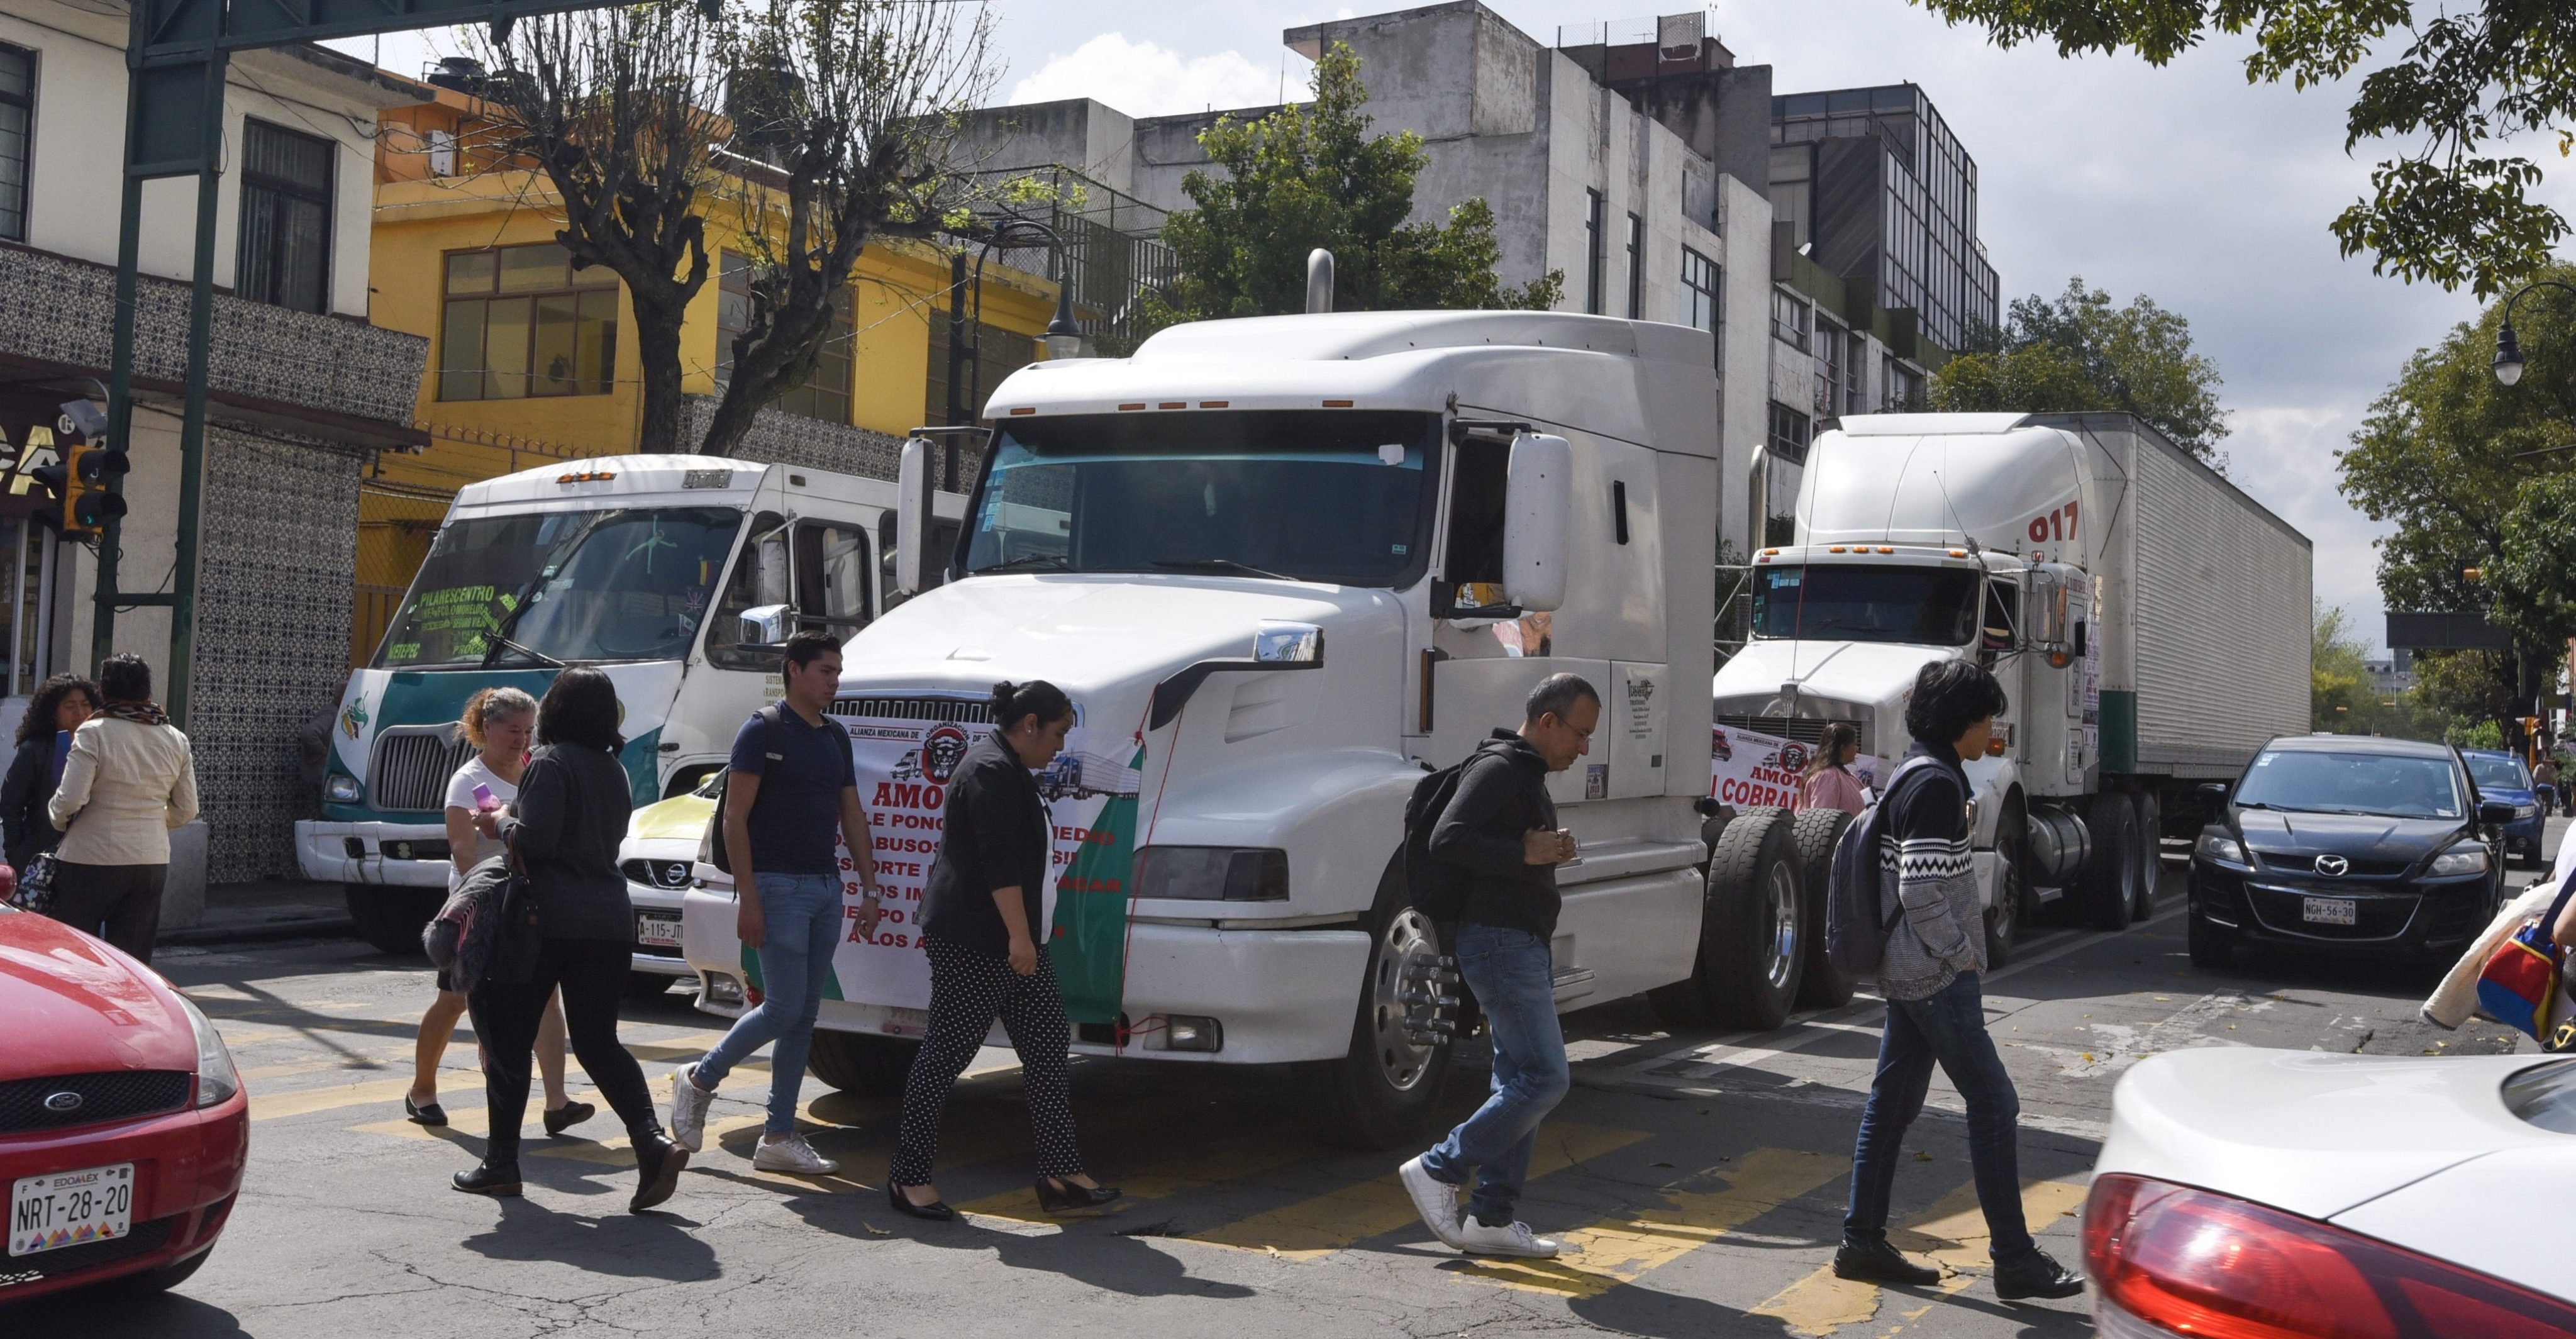 Aumentan robo a transportista con violencia y extorsión en Tlalpan